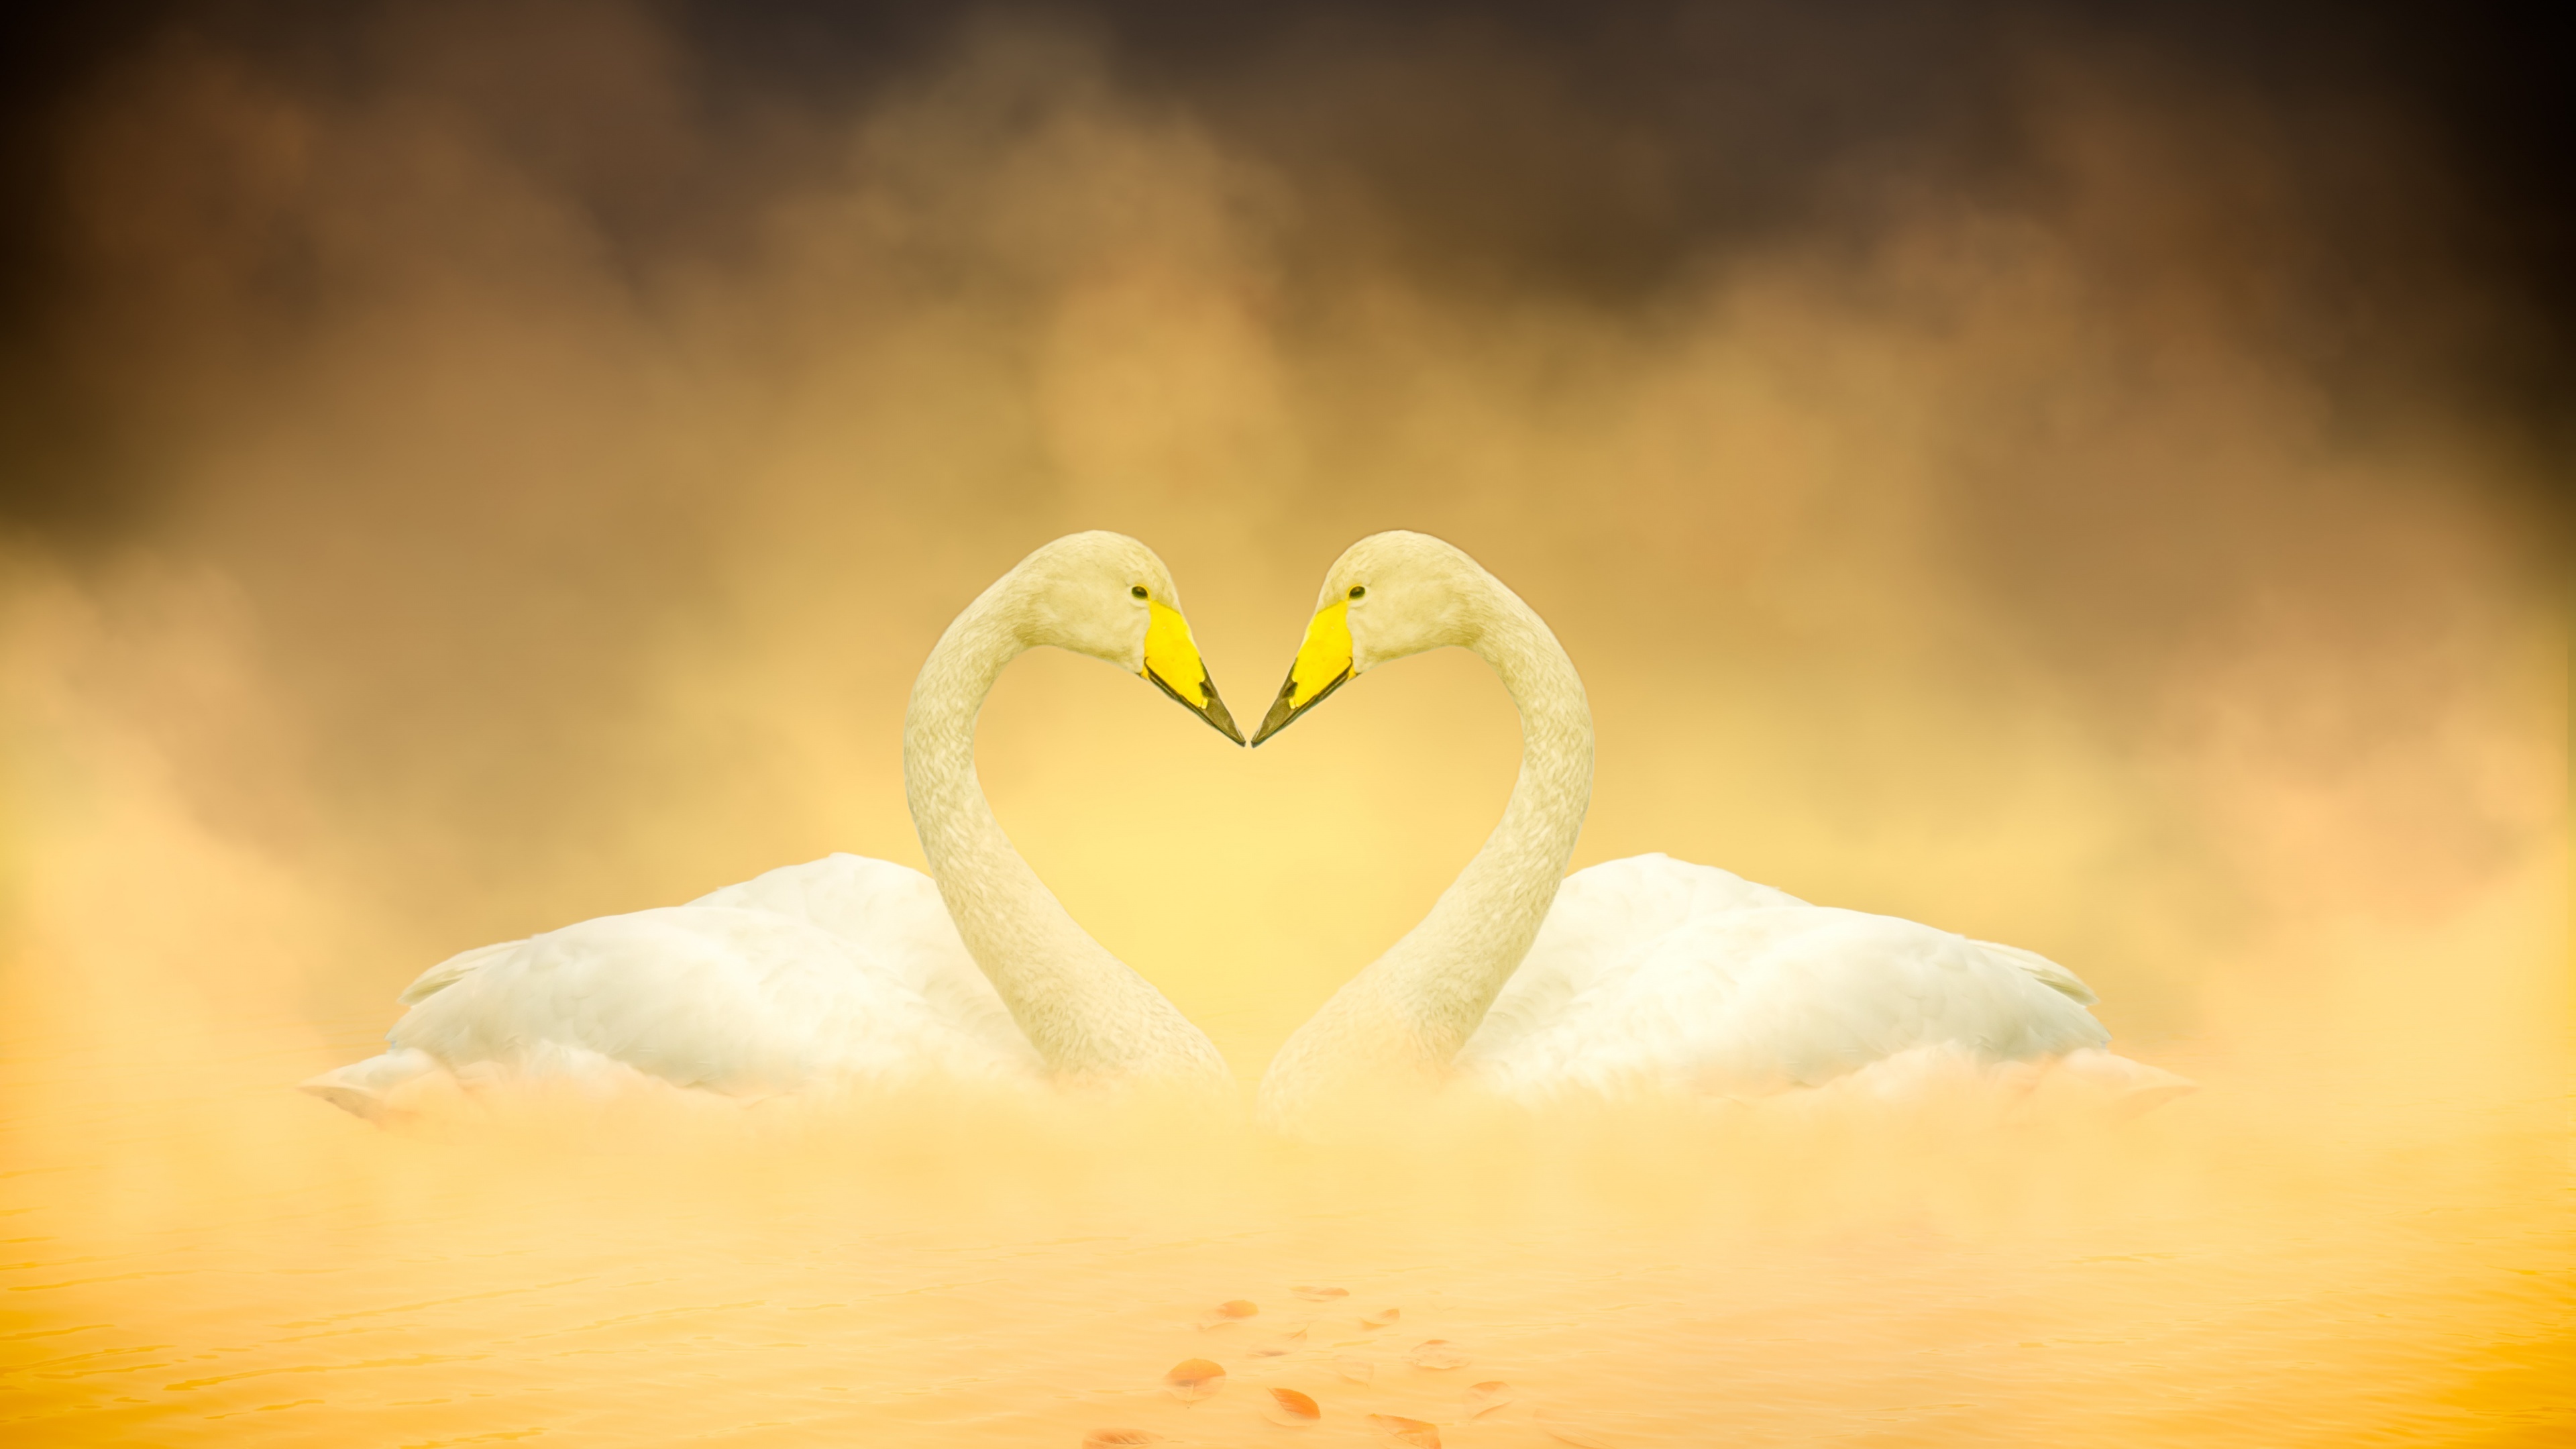 Heart Shape, White swan, Love birds, Autumn leaves, 3840x2160 4K Desktop